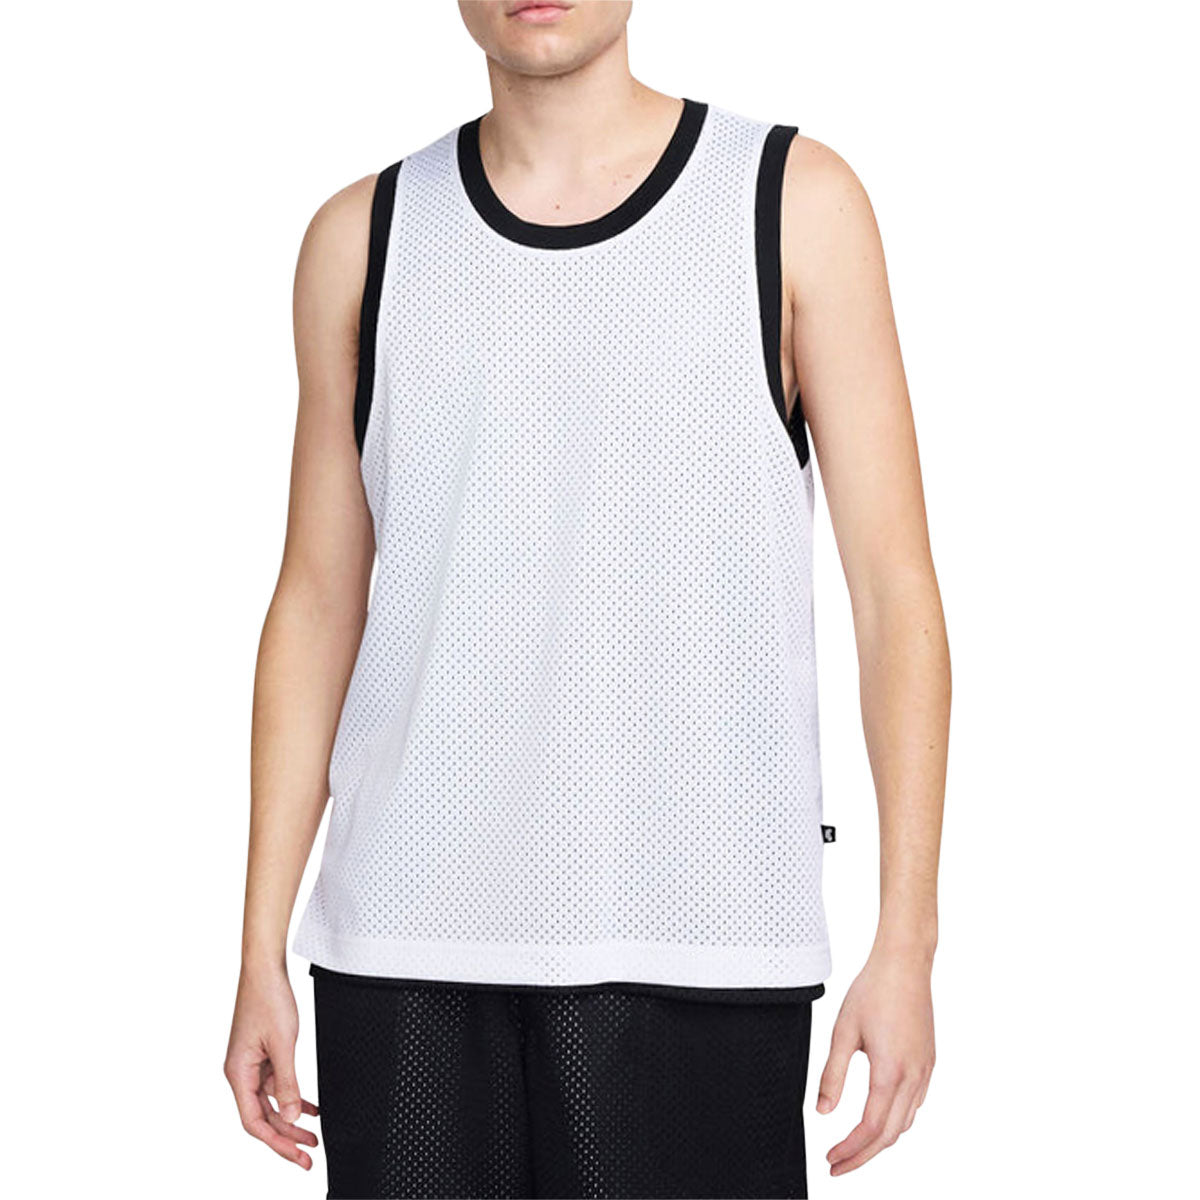 Nike SB Basketball Skate Jersey - Black/White image 3